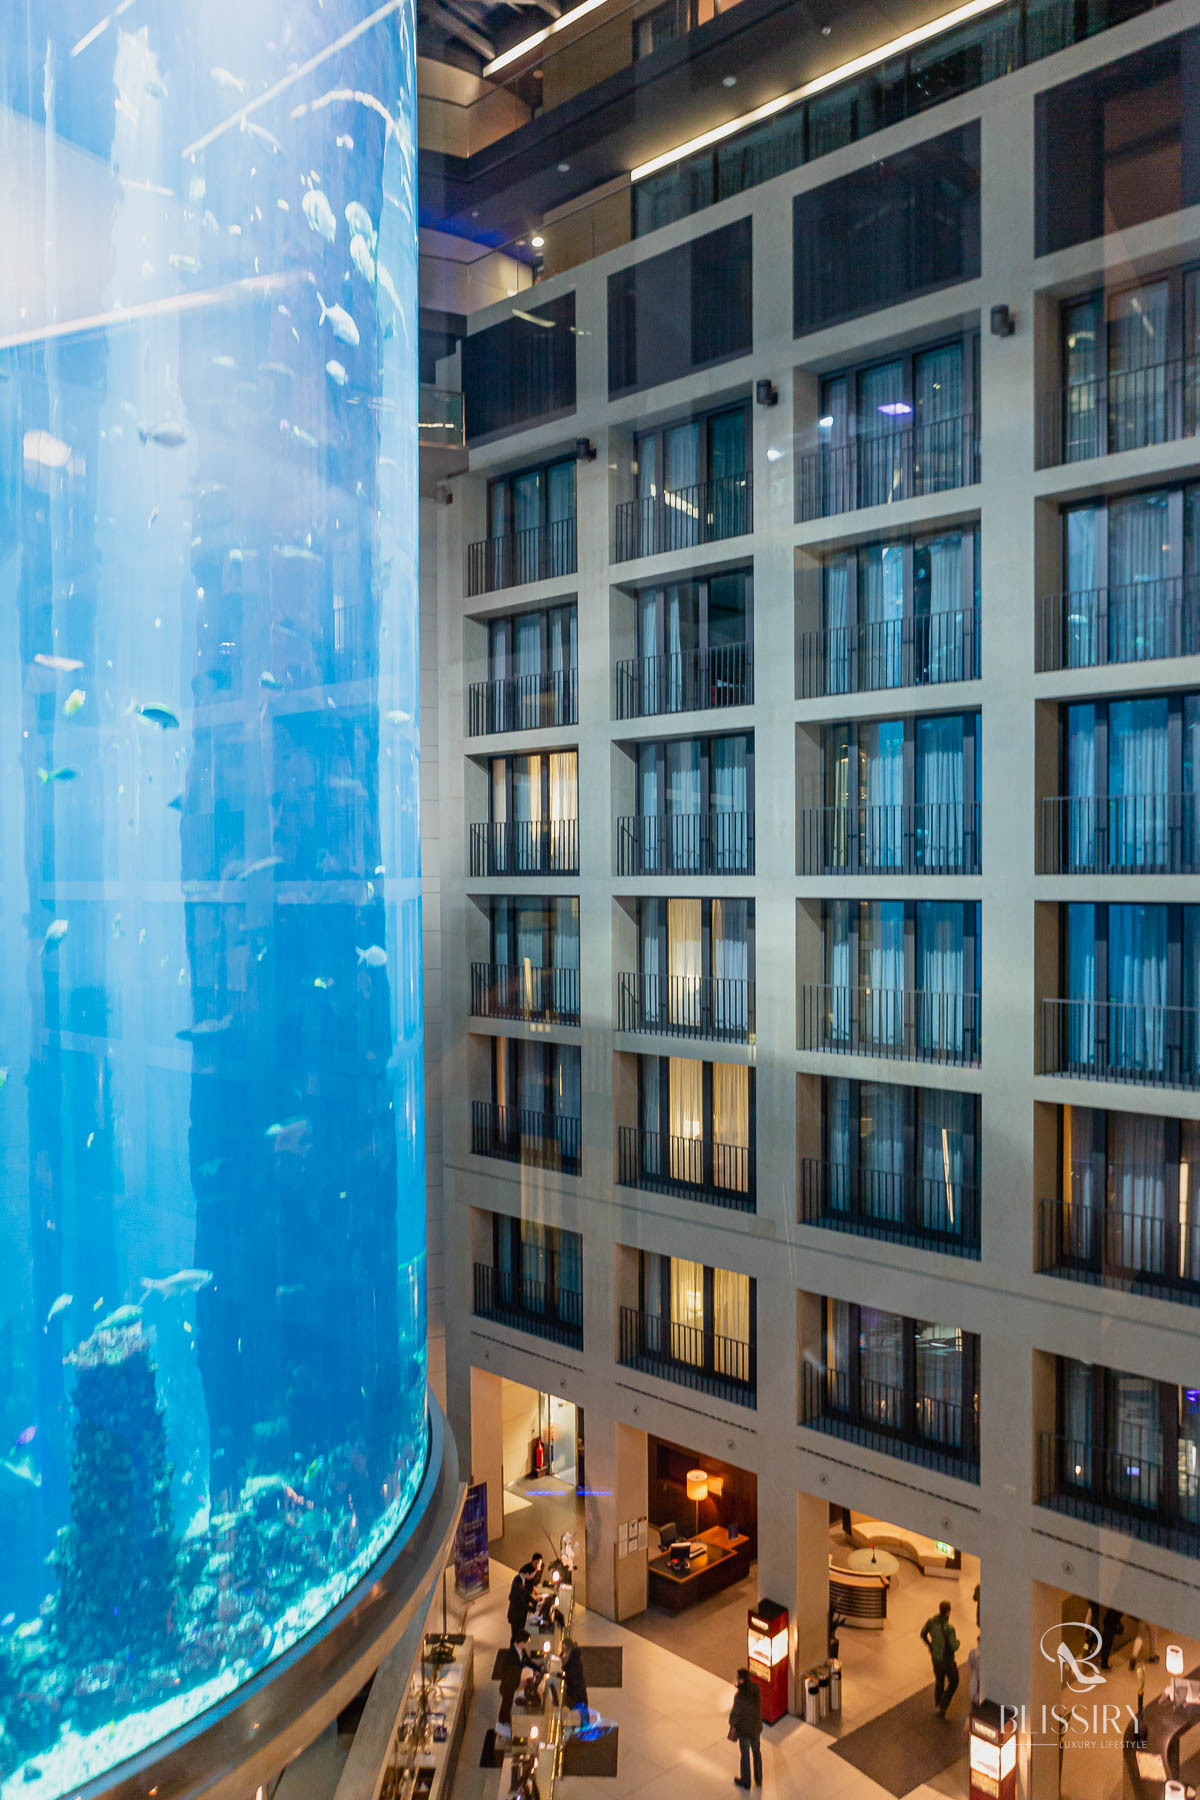 Aquadom Berlin - Heiraten im Aquarium Aufzug - eine besondere Hochzeitslocation - 1500 Fische als Trauzeugen